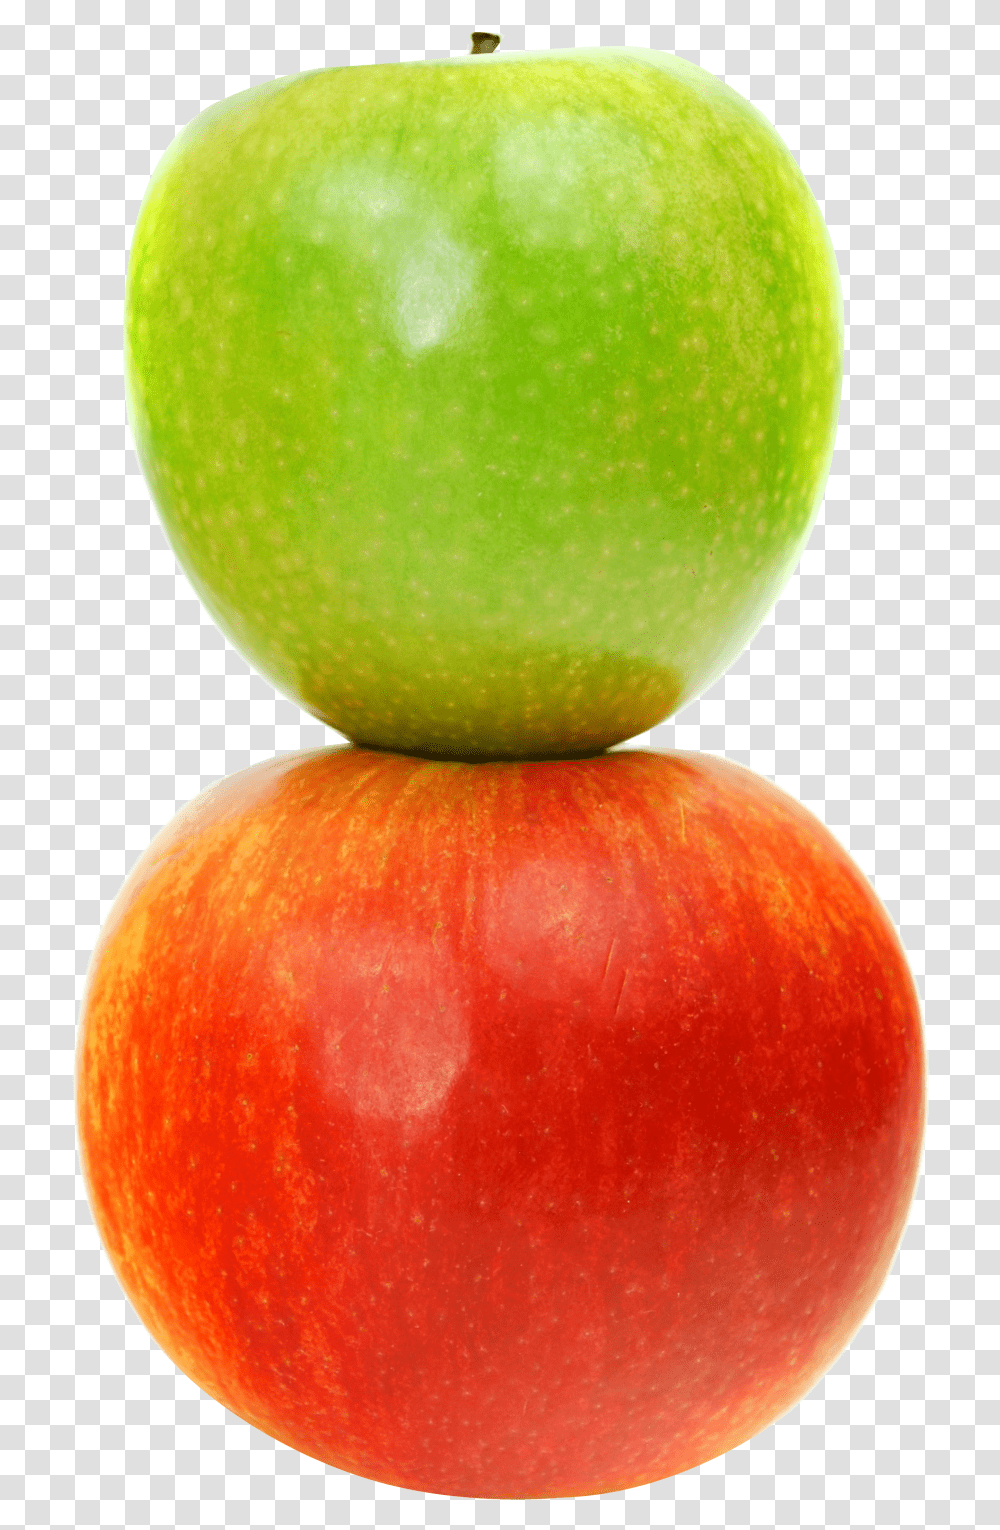 Double Apples Image Purepng Free Cc0 Double Apple, Fruit, Plant, Food Transparent Png